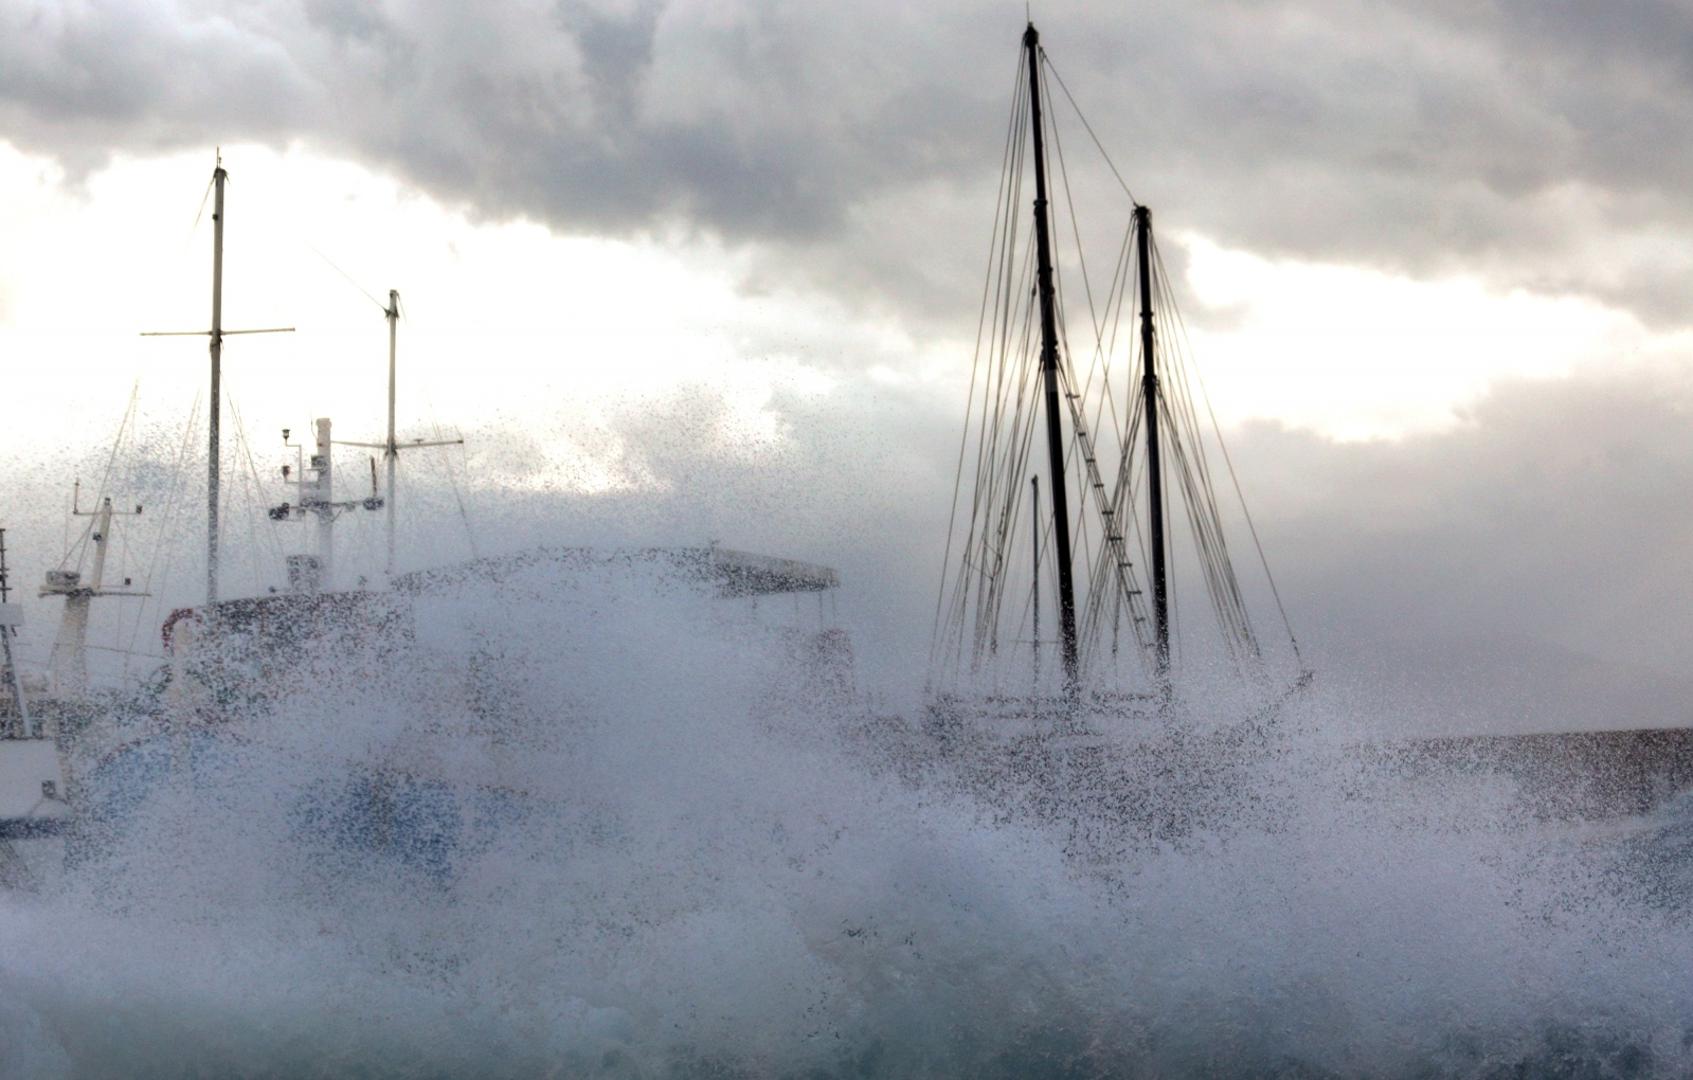 06.12.2020., Vodice - Orkansko jugo podizalo valove koji su zalijevali rivu.
Photo: Dusko Jaramaz/PIXSELL